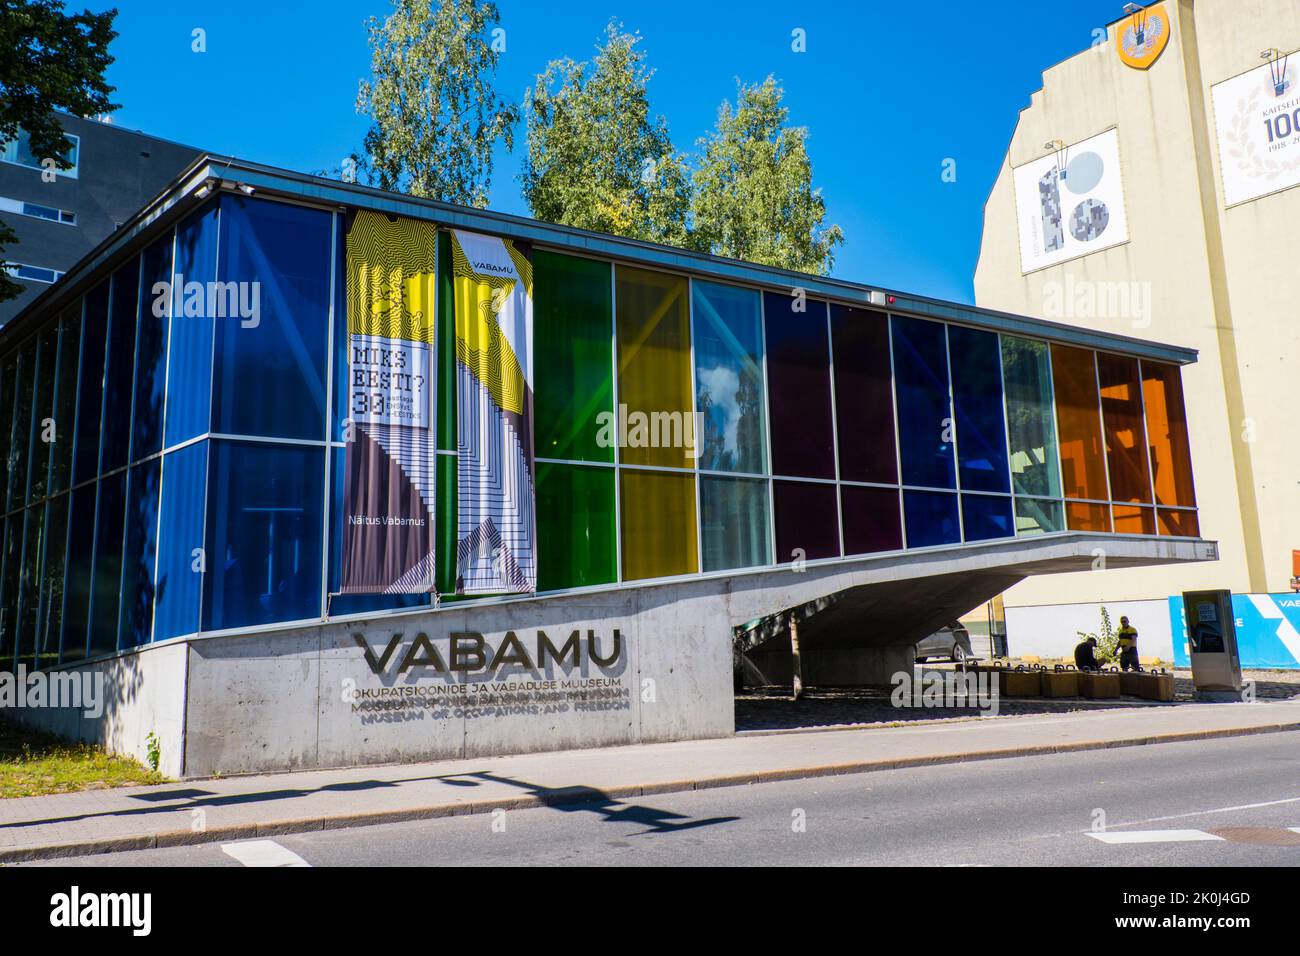 Vabamu, museo delle occupazioni, Tallinn, Estonia Foto Stock